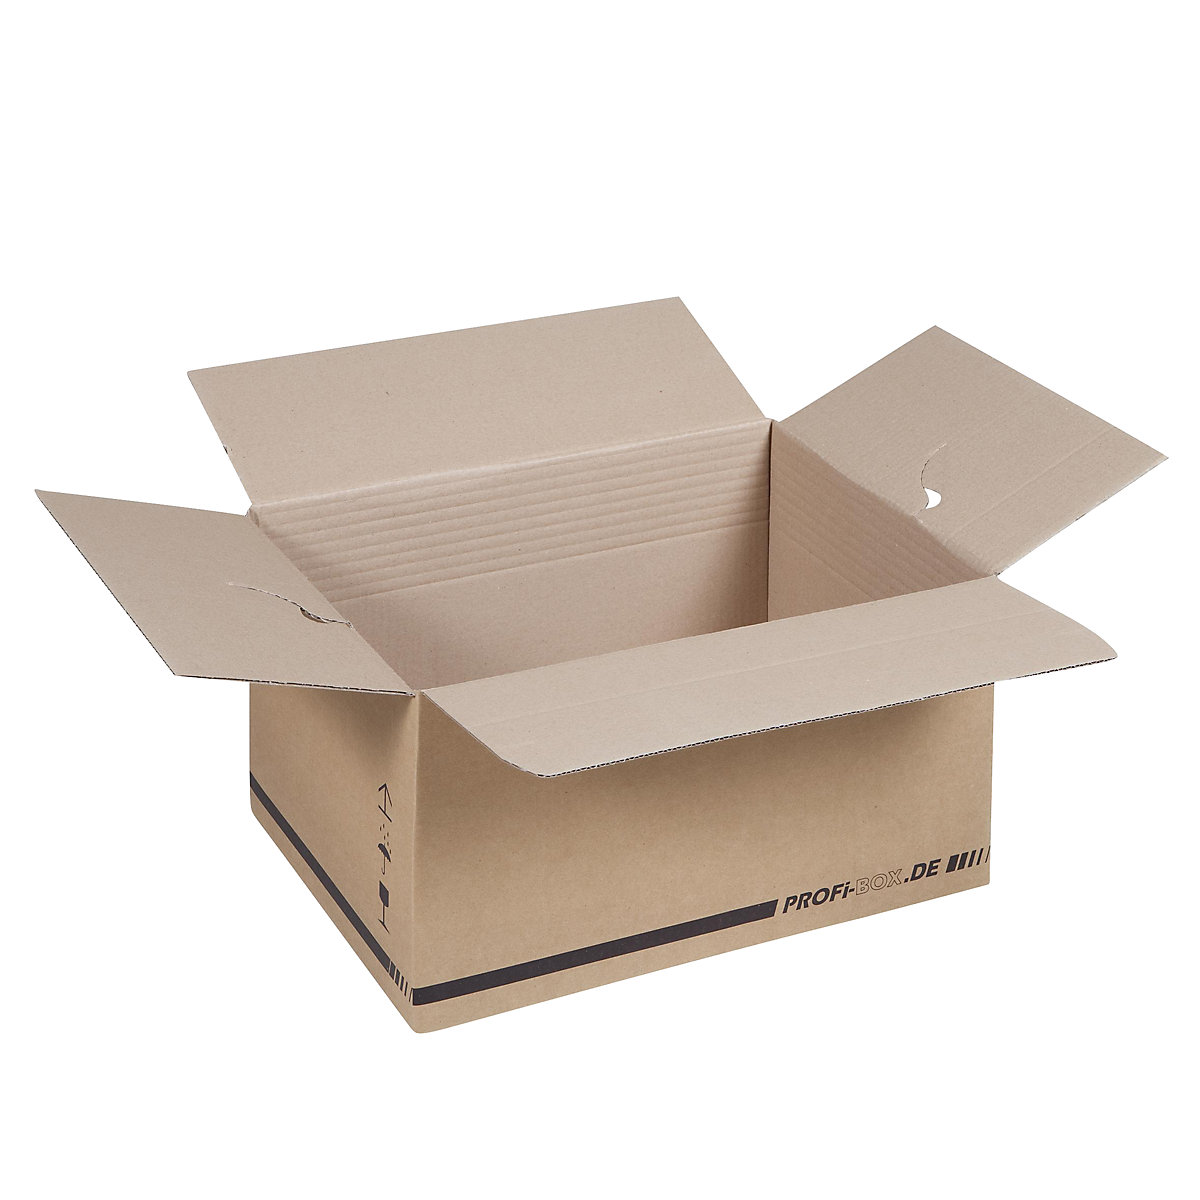 Profi box, z 1-vlnitej lepenky, FEFCO 0701, vnútorné rozmery 445 x 315 x 235 mm, OJ 50 ks-3